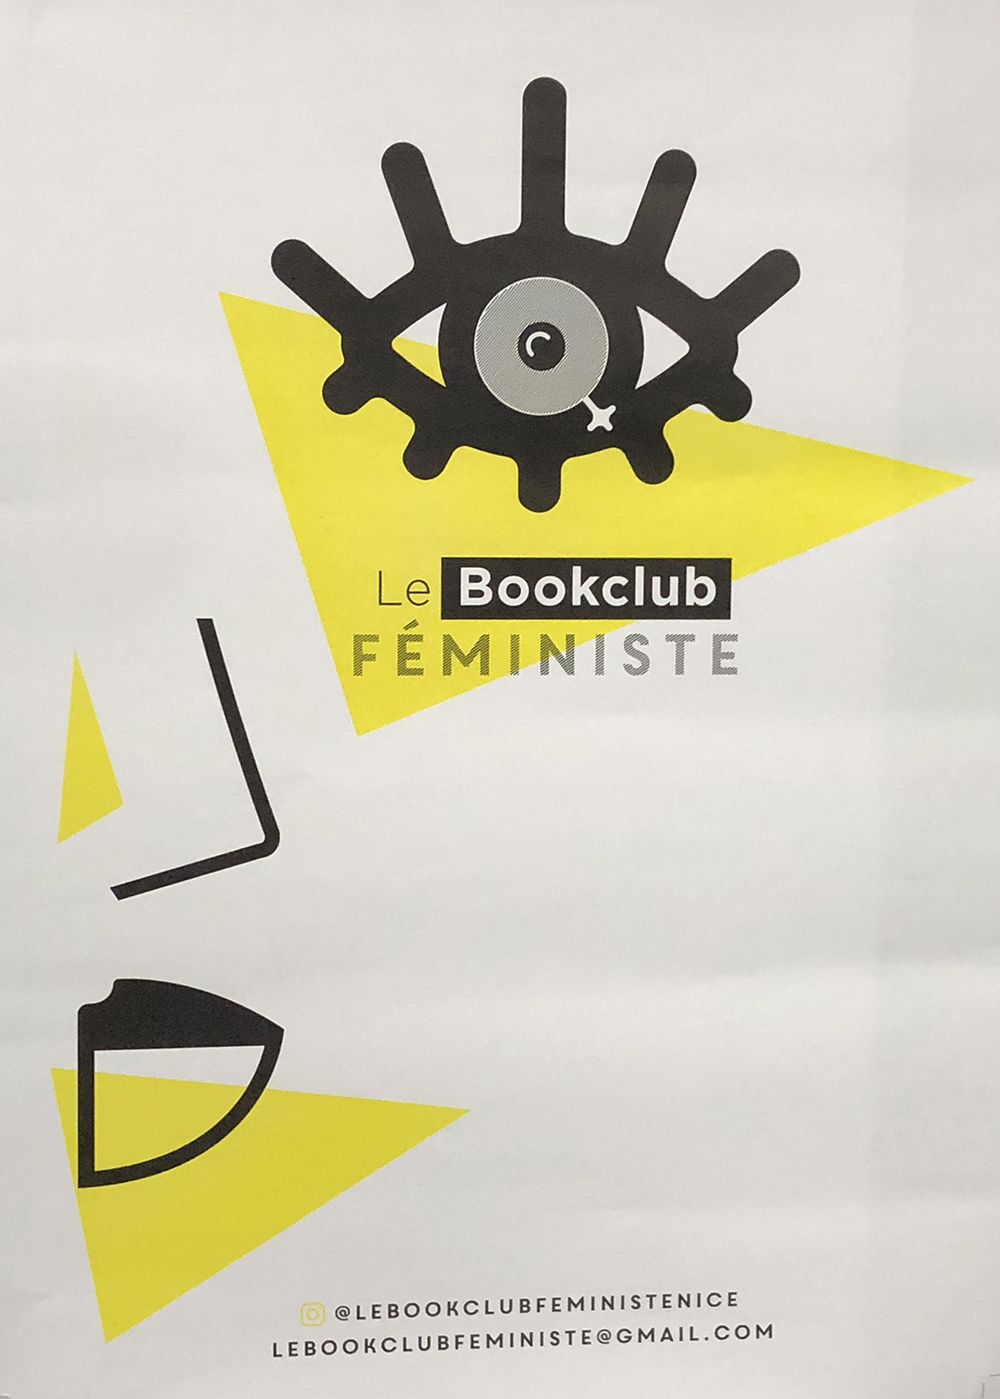 Book Club 1